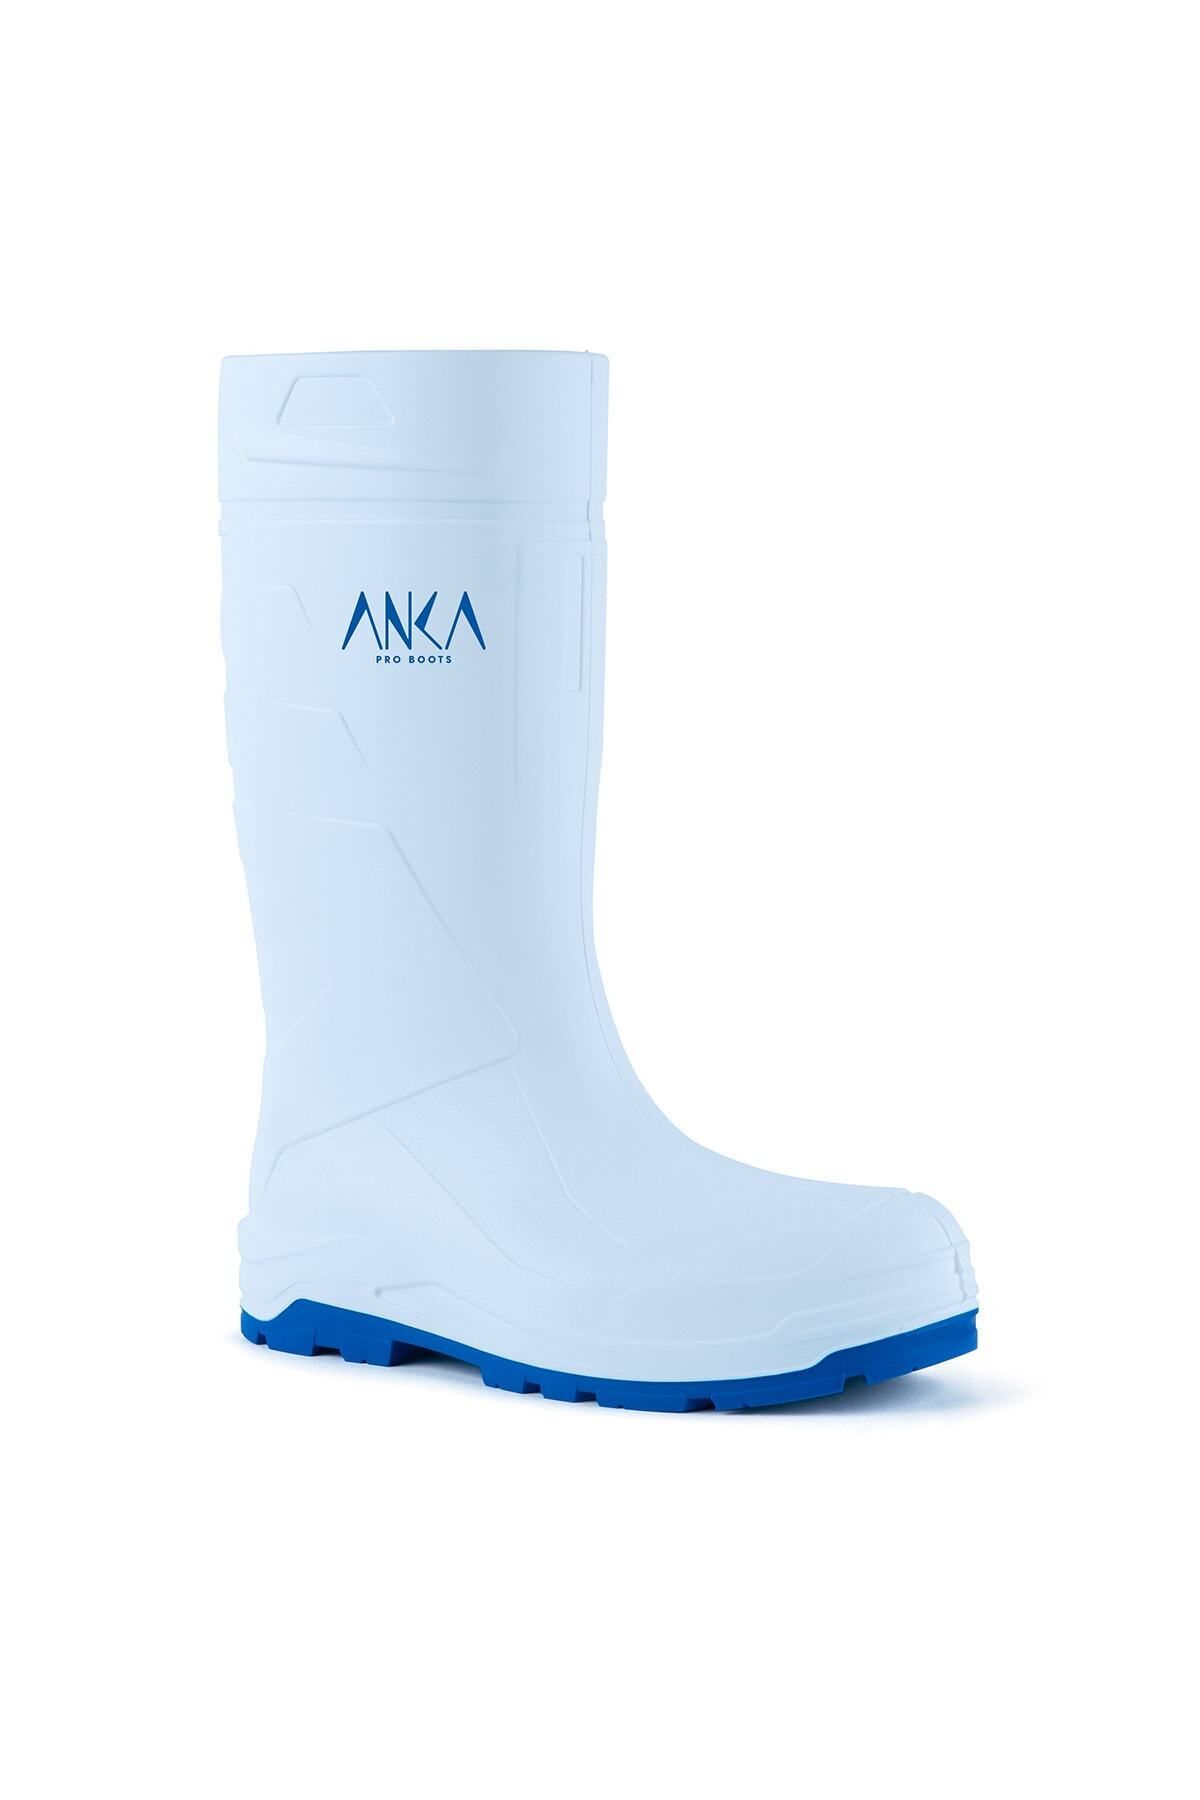 Anka Pro Boots 904 S5